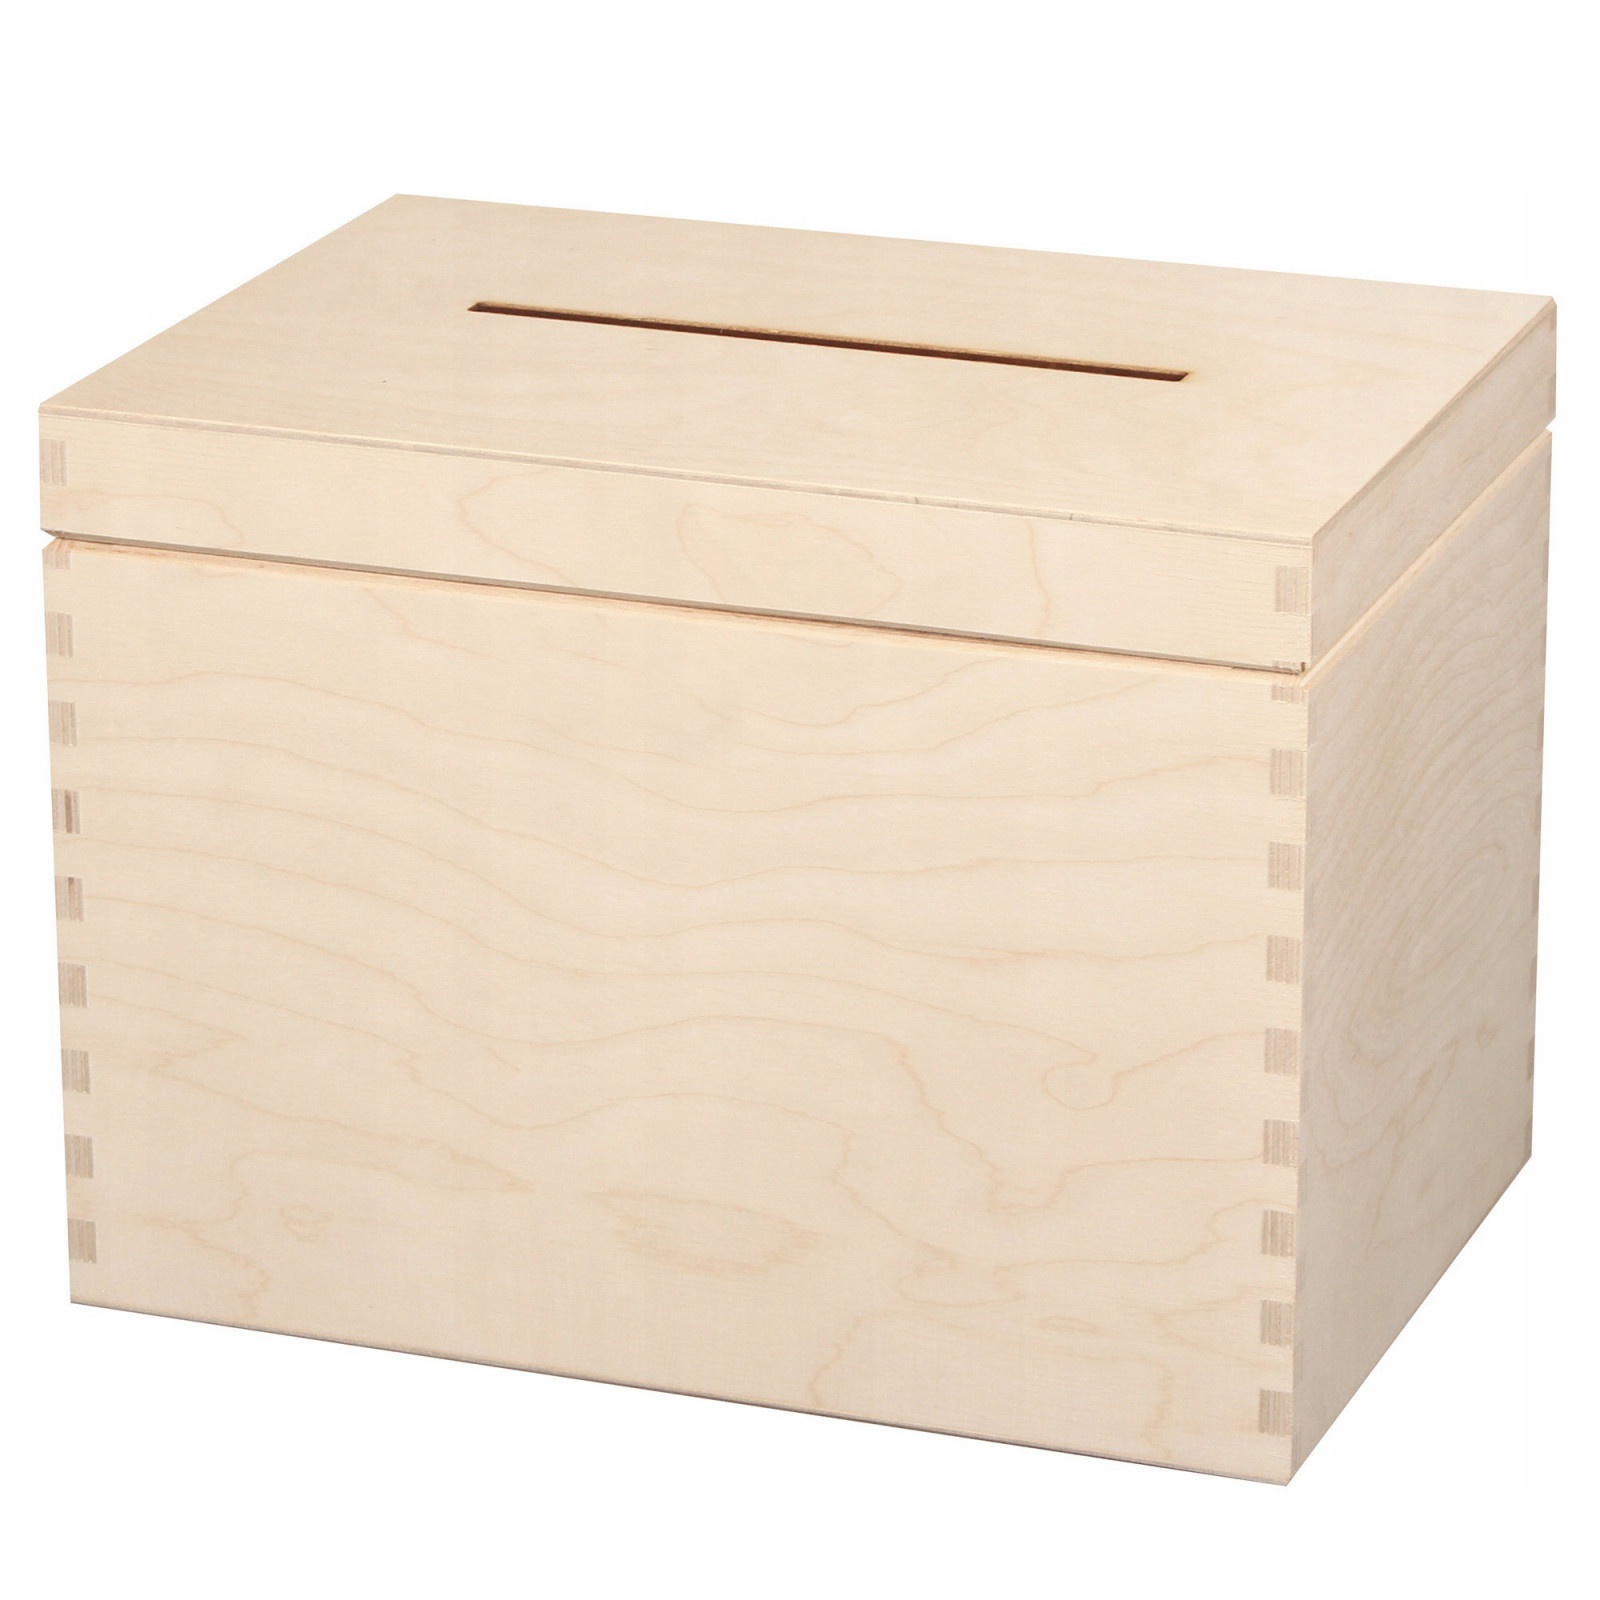 Dřevěný box 29x20x21cm krabička na svatbu obálky megamix.shop